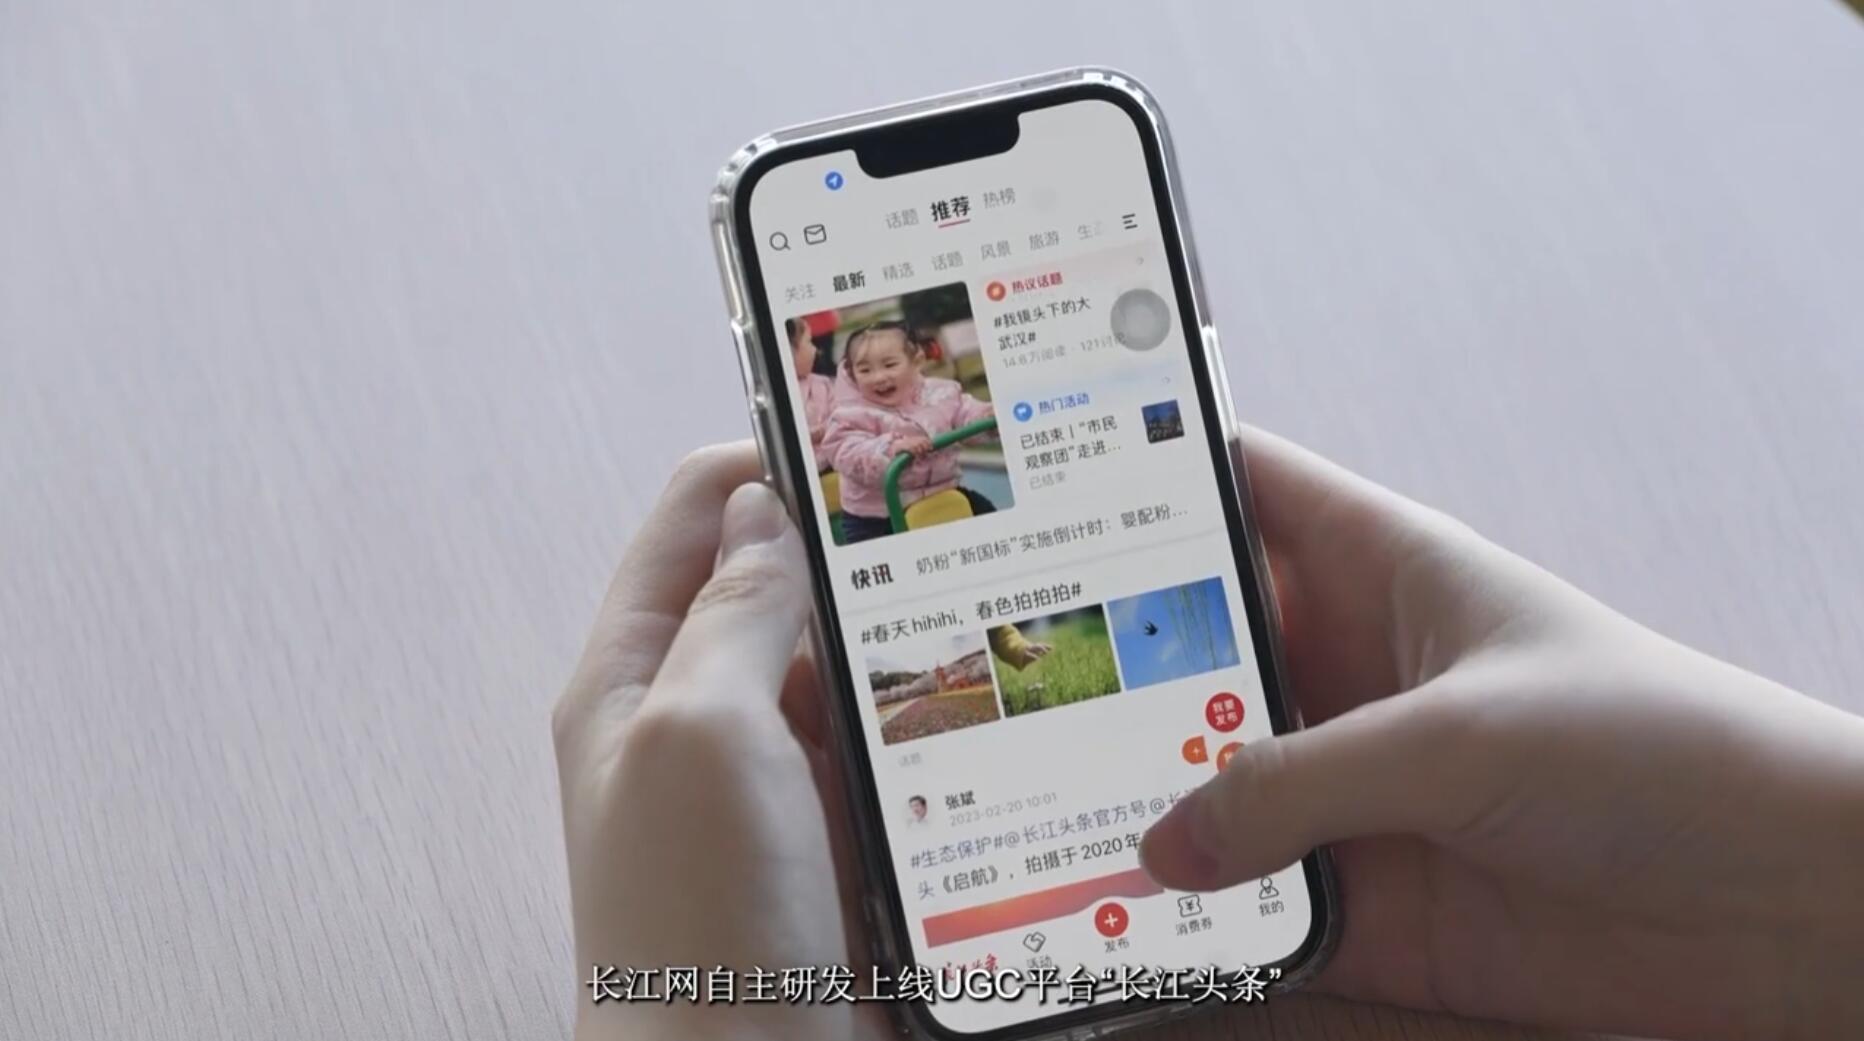 以“长江”为名，“网”聚向上的力量，长江网首次发布媒体责任报告